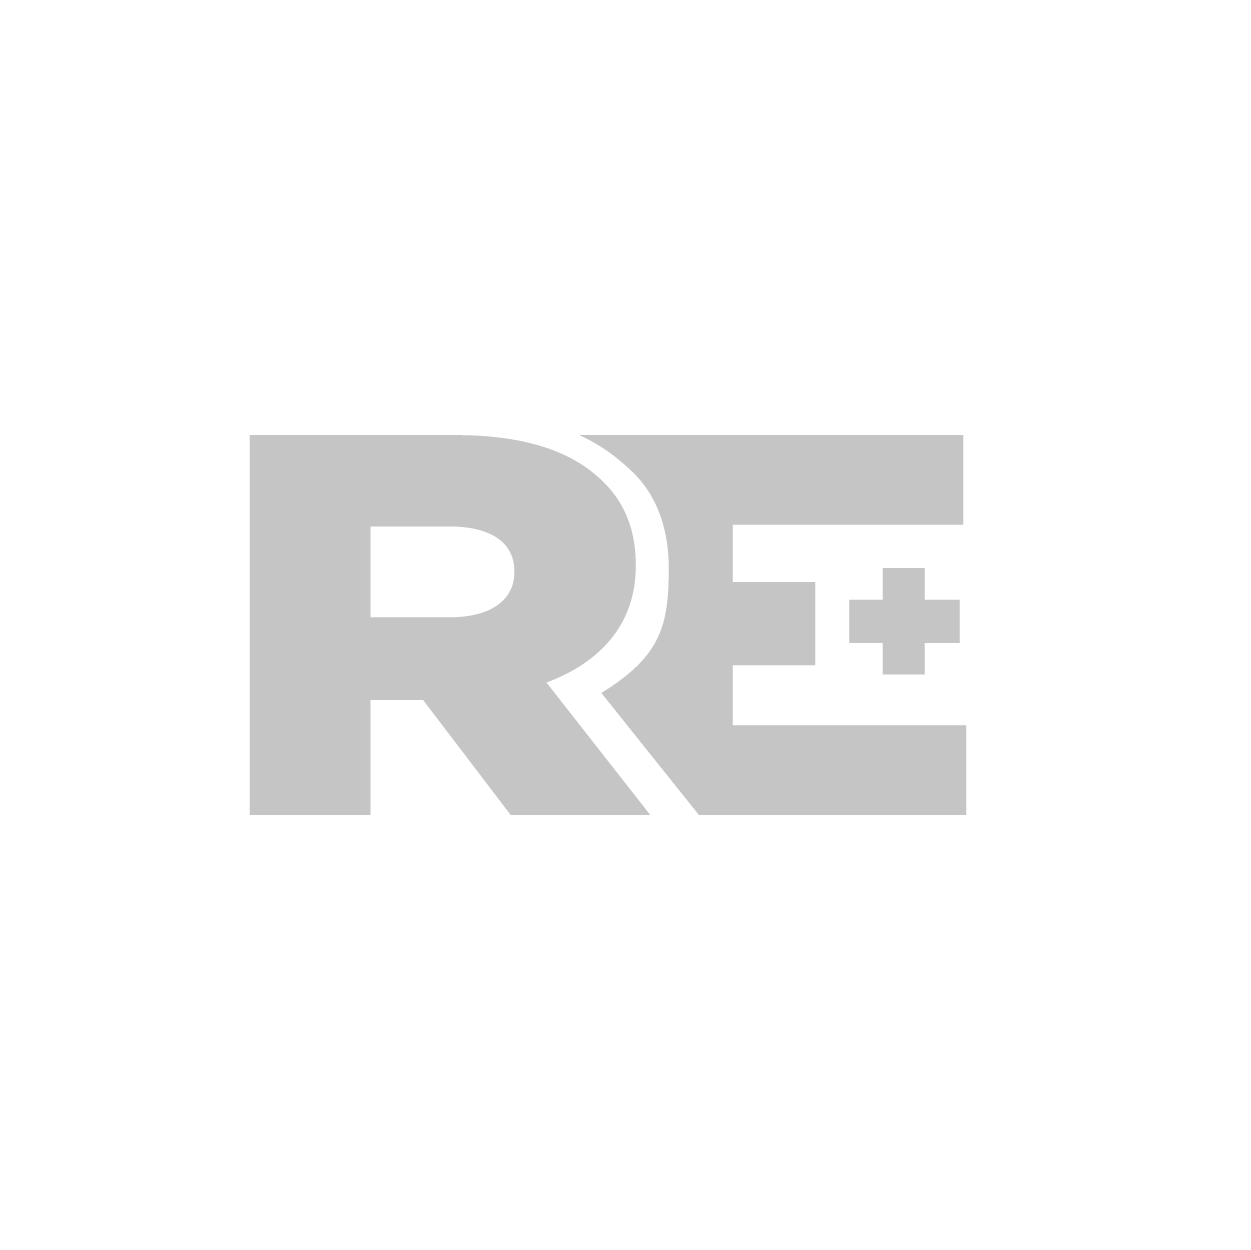 logos reel-02